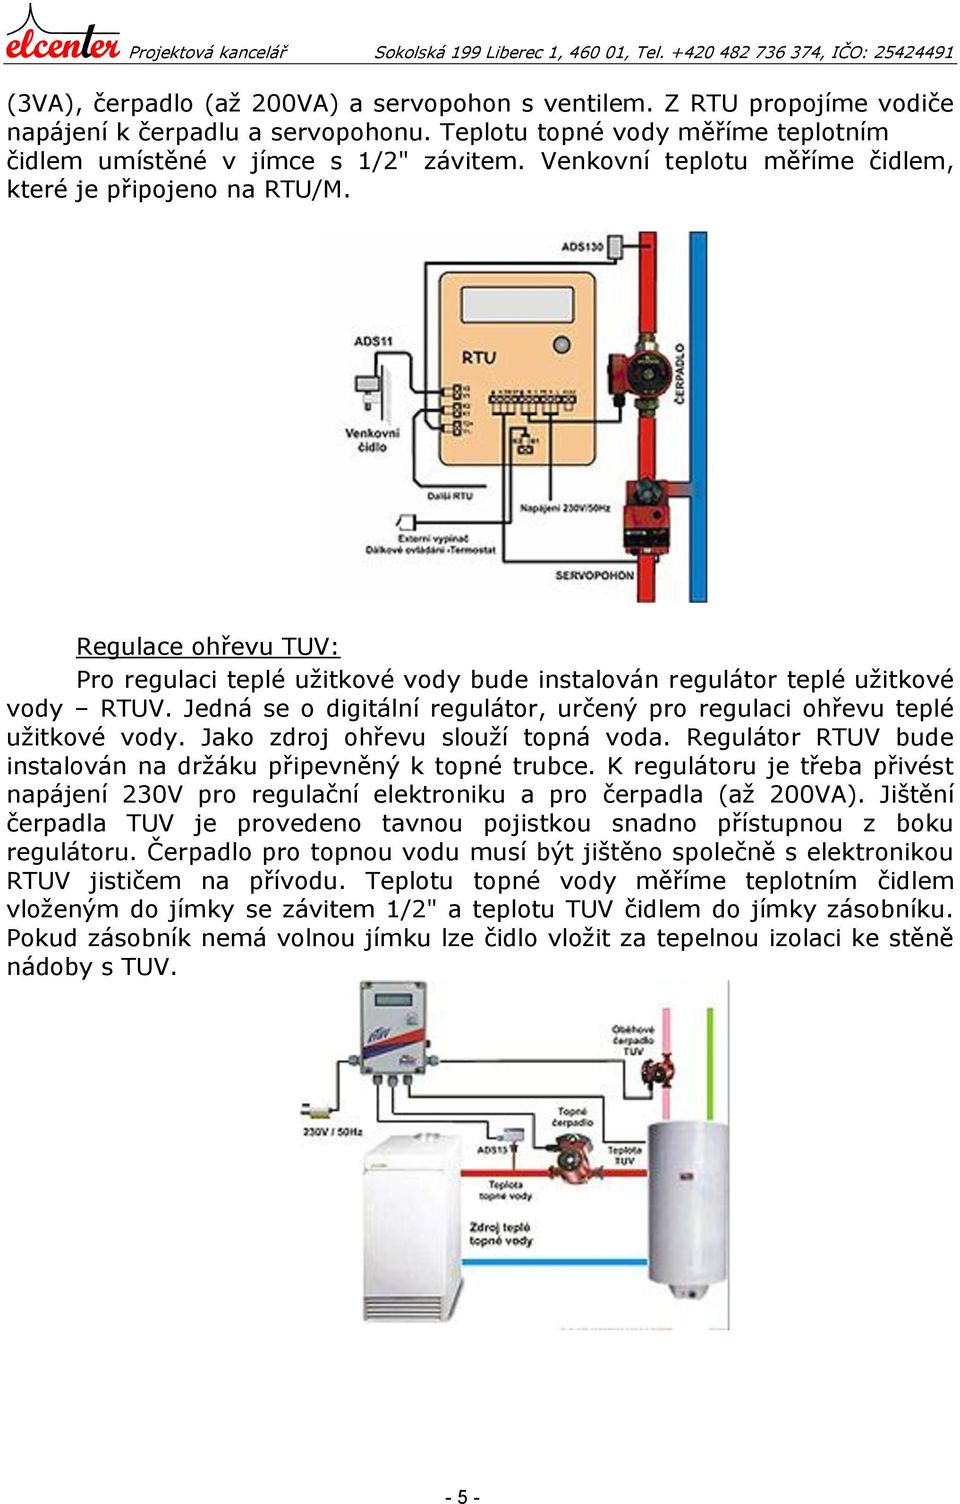 Jedná se o digitální regulátor, určený pro regulaci ohřevu teplé užitkové vody. Jako zdroj ohřevu slouží topná voda. Regulátor RTUV bude instalován na držáku připevněný k topné trubce.